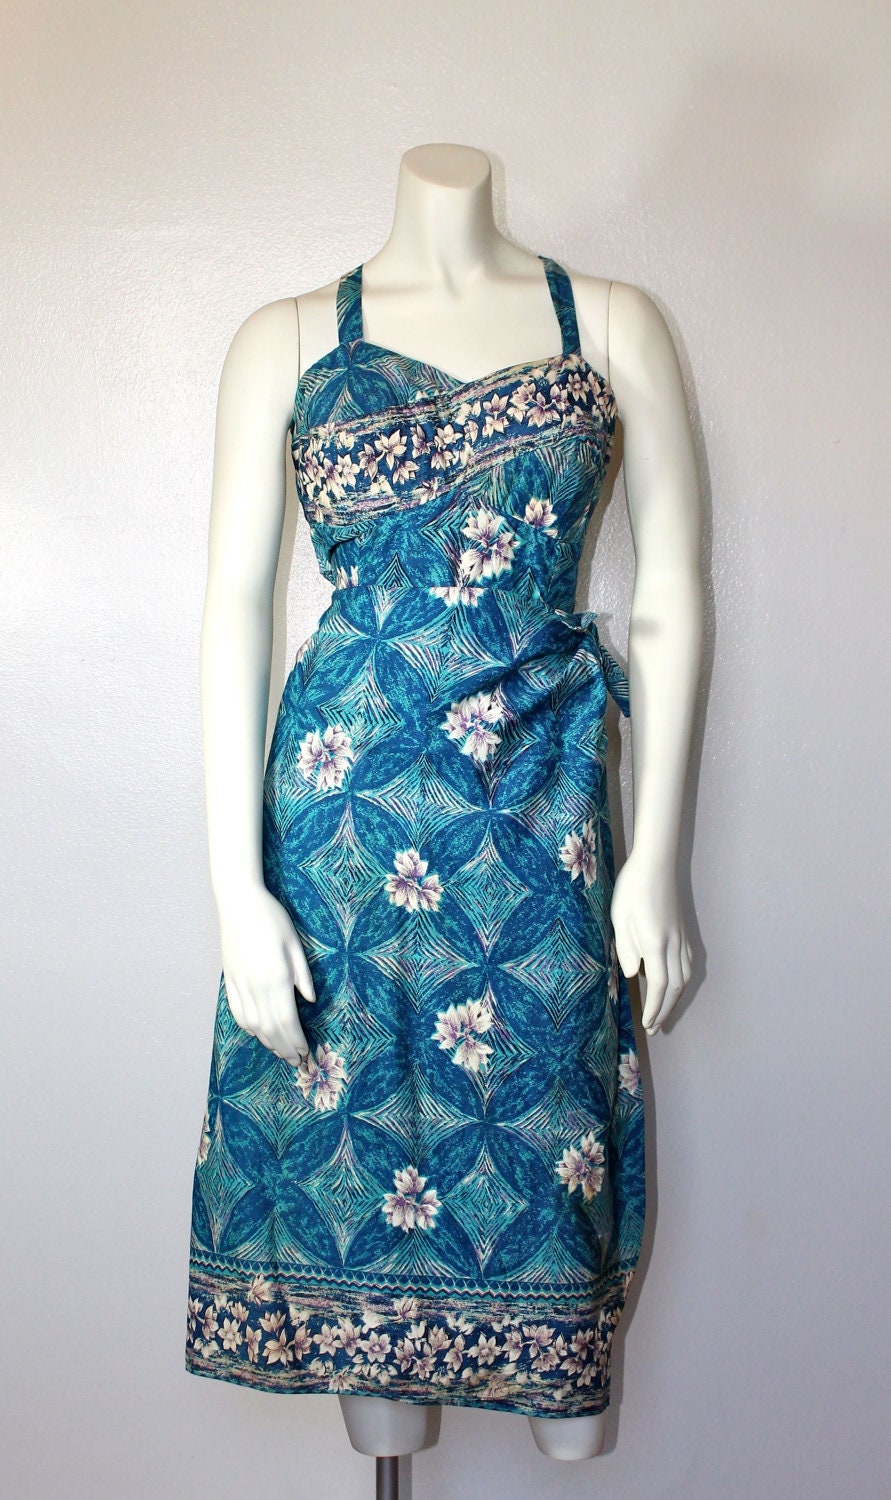 Vintage 1950s Hawaiian Dress // 50s Blue Floral Print Hawaiian